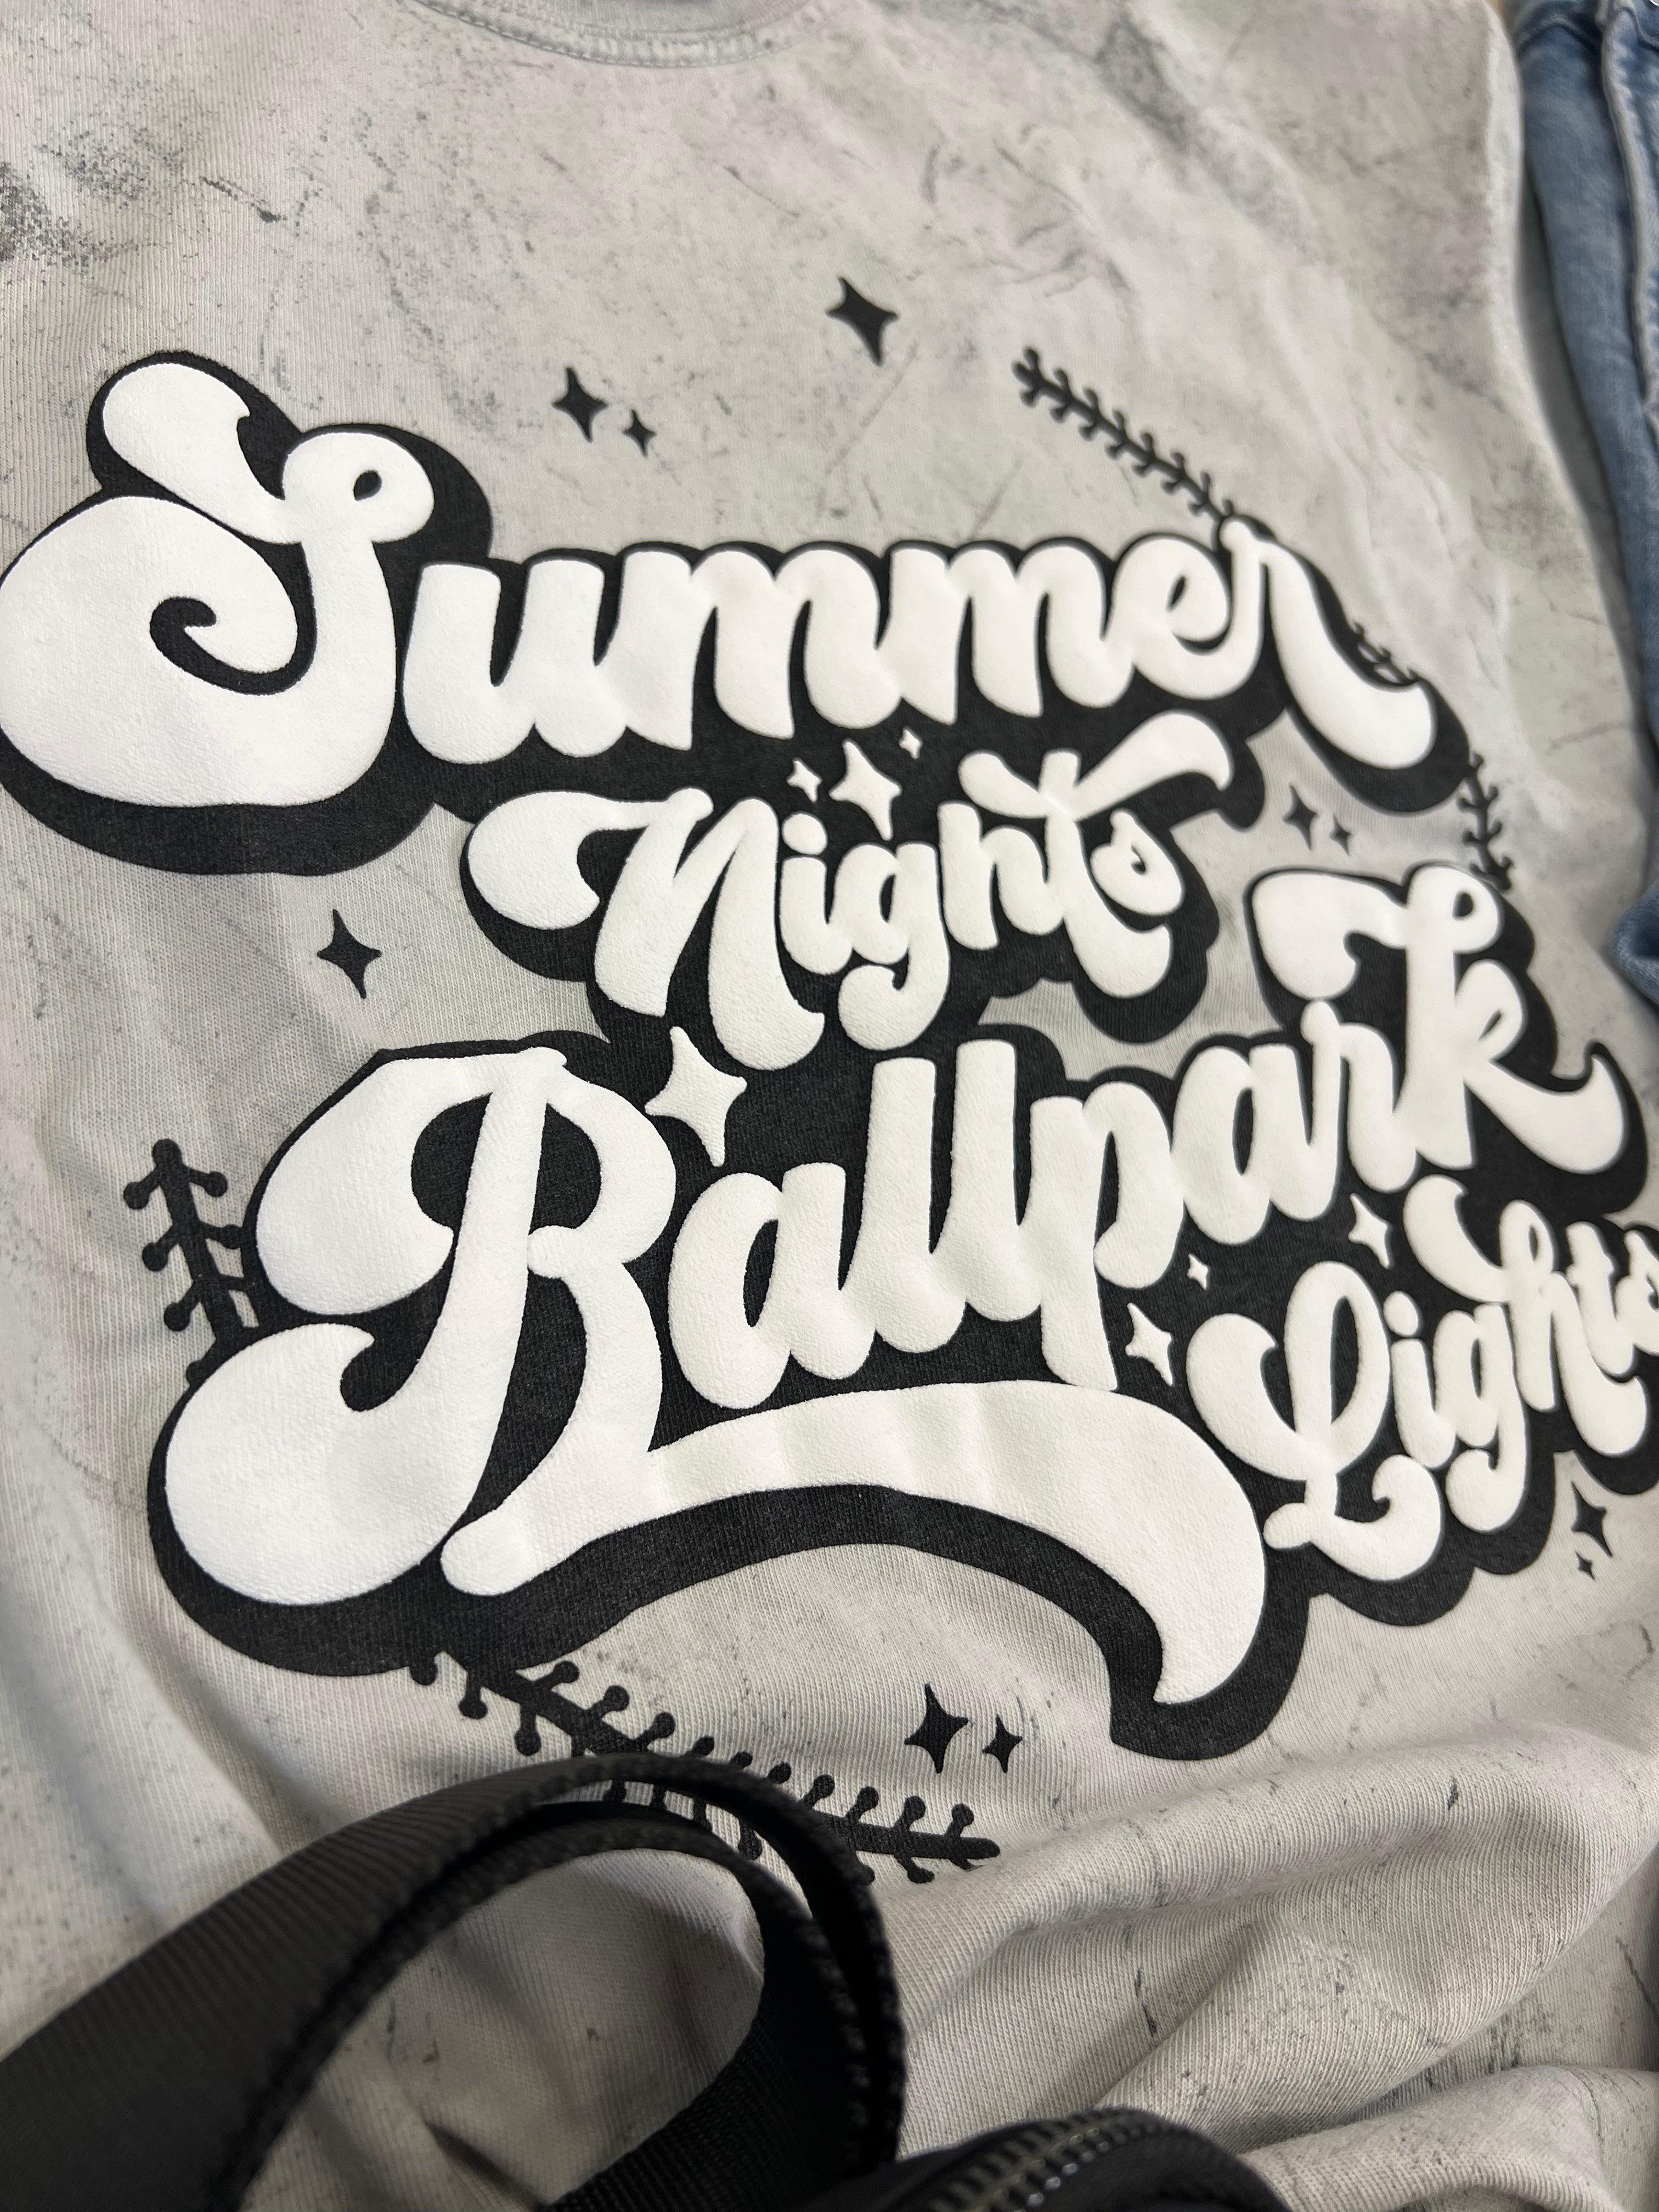 Summer Nights Ballpark Lights Tee or Sweatshirt